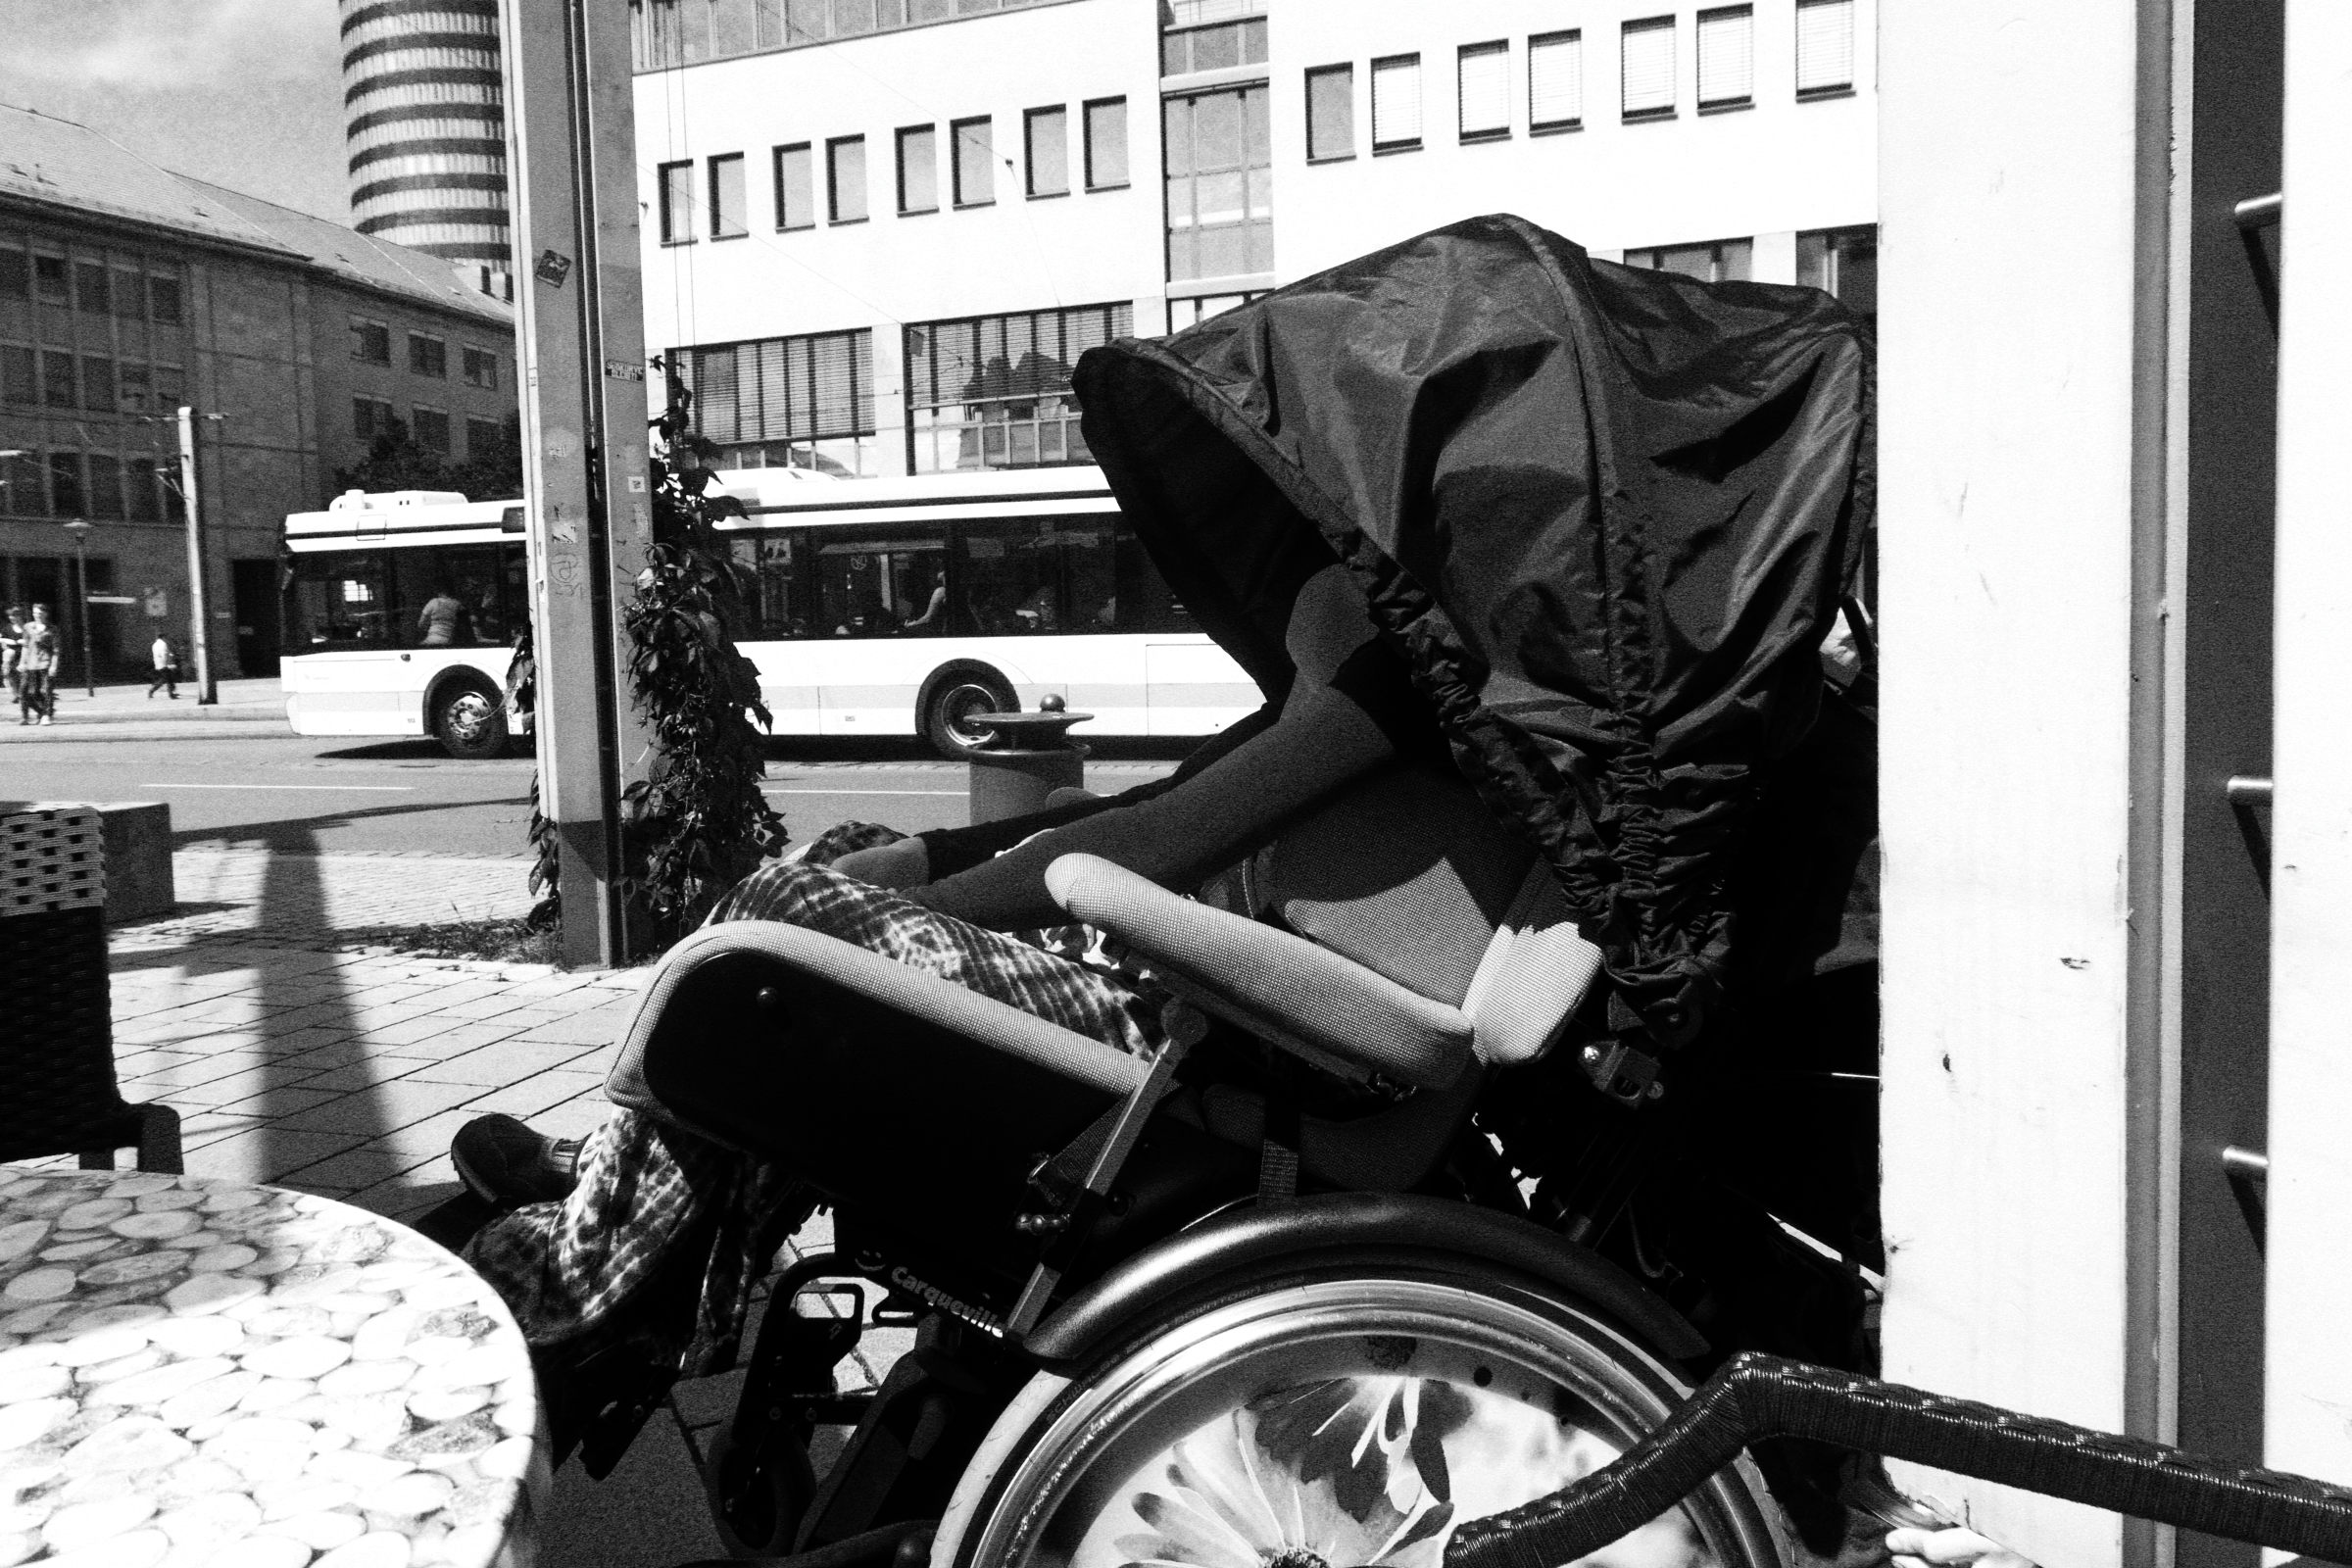 Rollstuhl mit Verdeck in der Stadt in Schwarz-Weiß